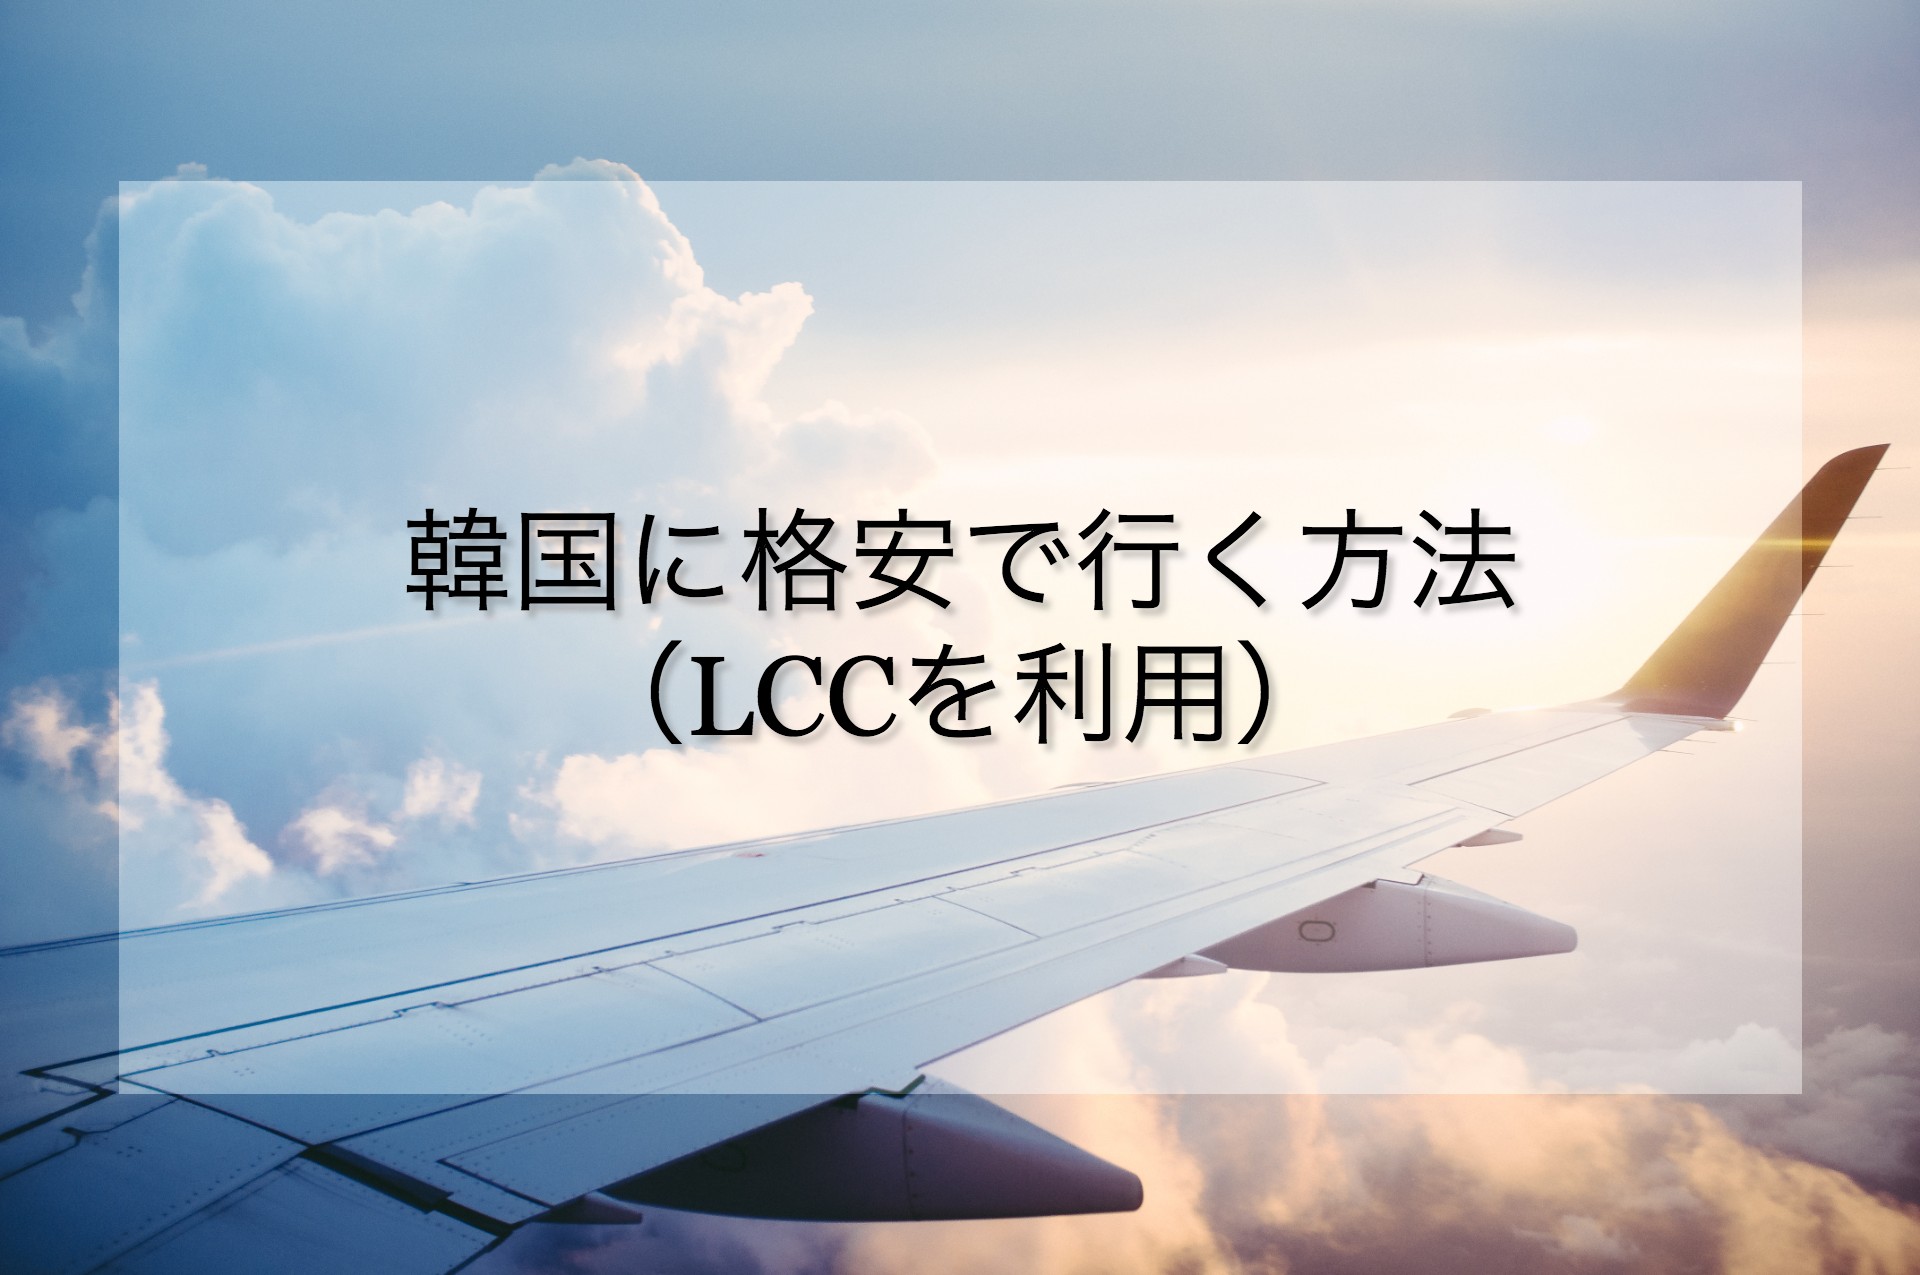 関空から韓国にLCCで格安旅行